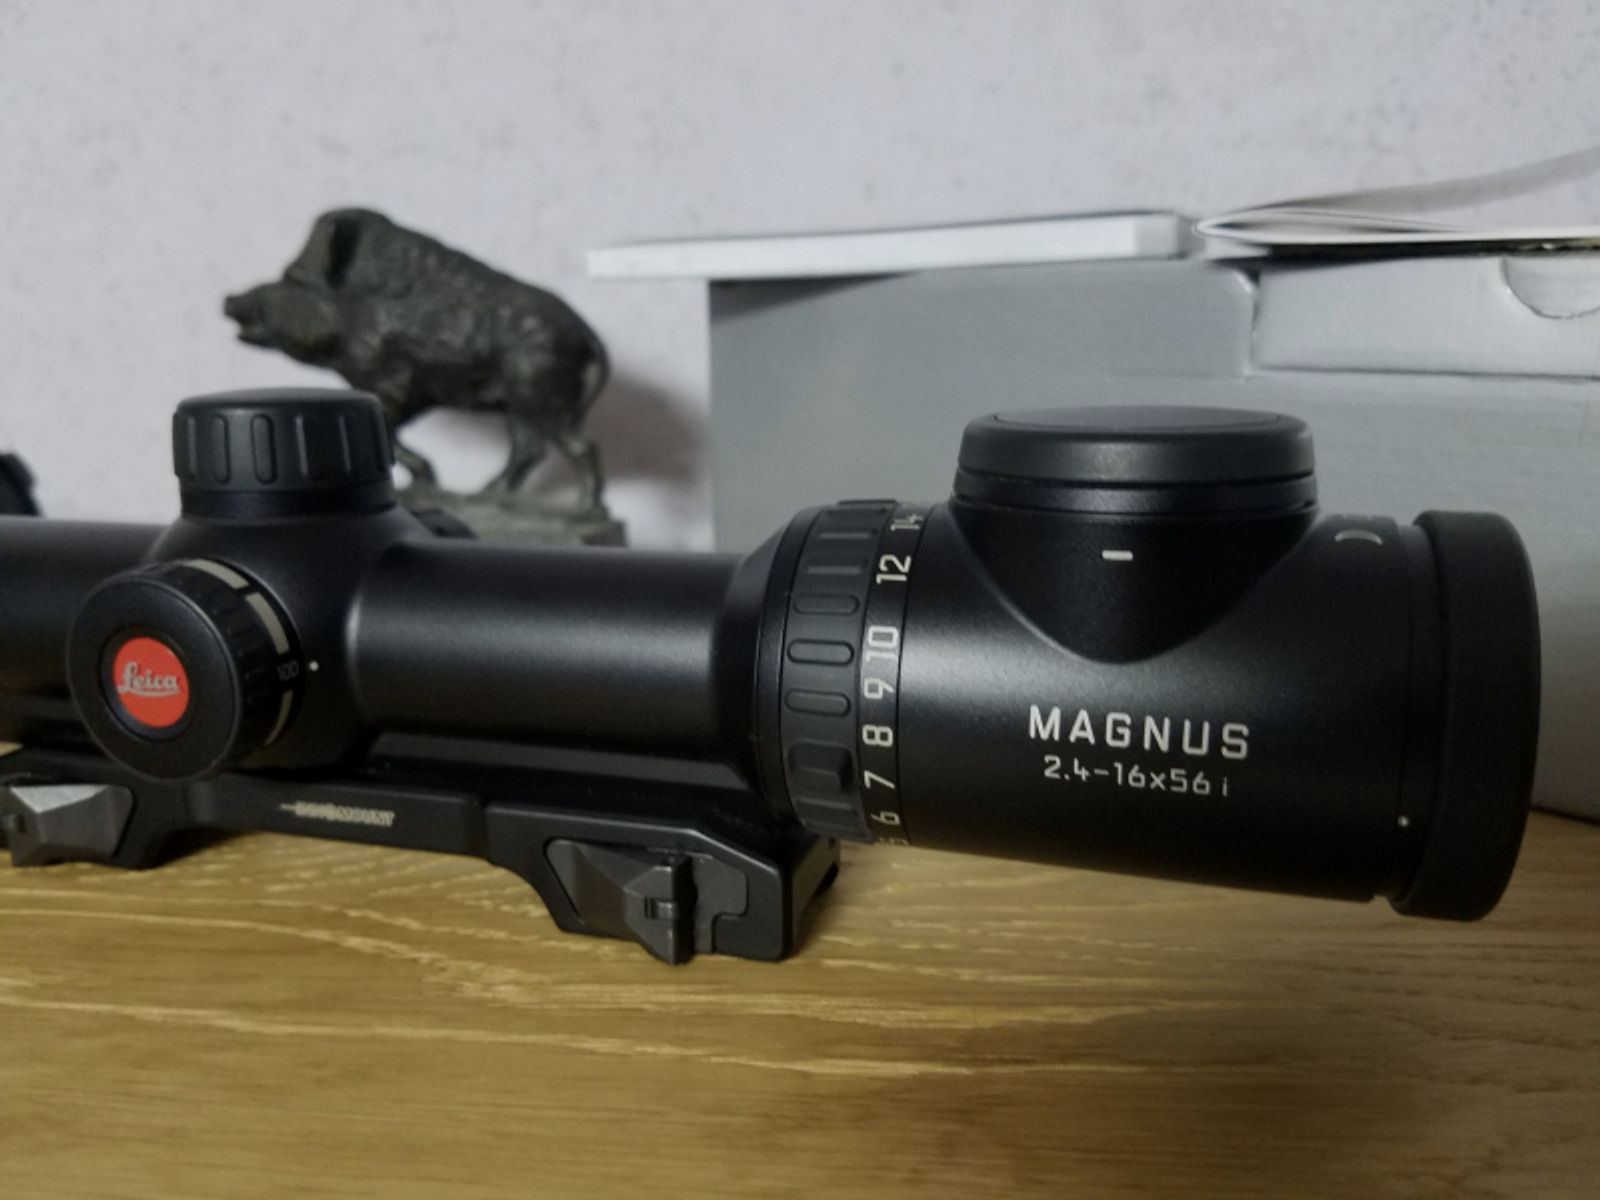 Leica Magnus 2,4-16x56i inklusive Innomount-Montage